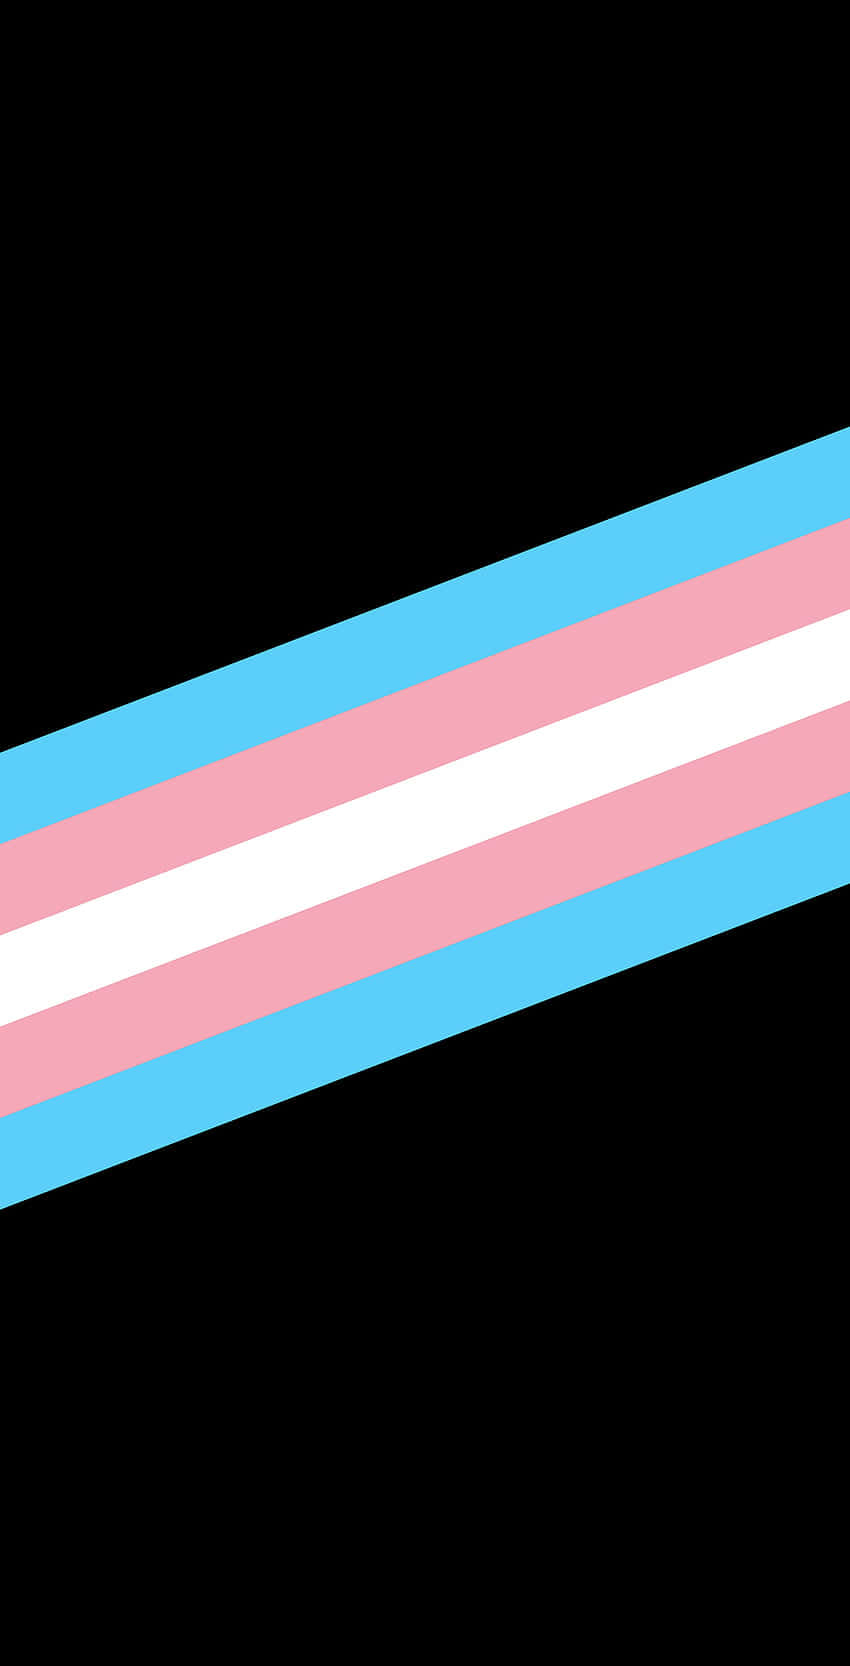 Fejrindividualitet Og Mangfoldighed Med Pride-flaget.